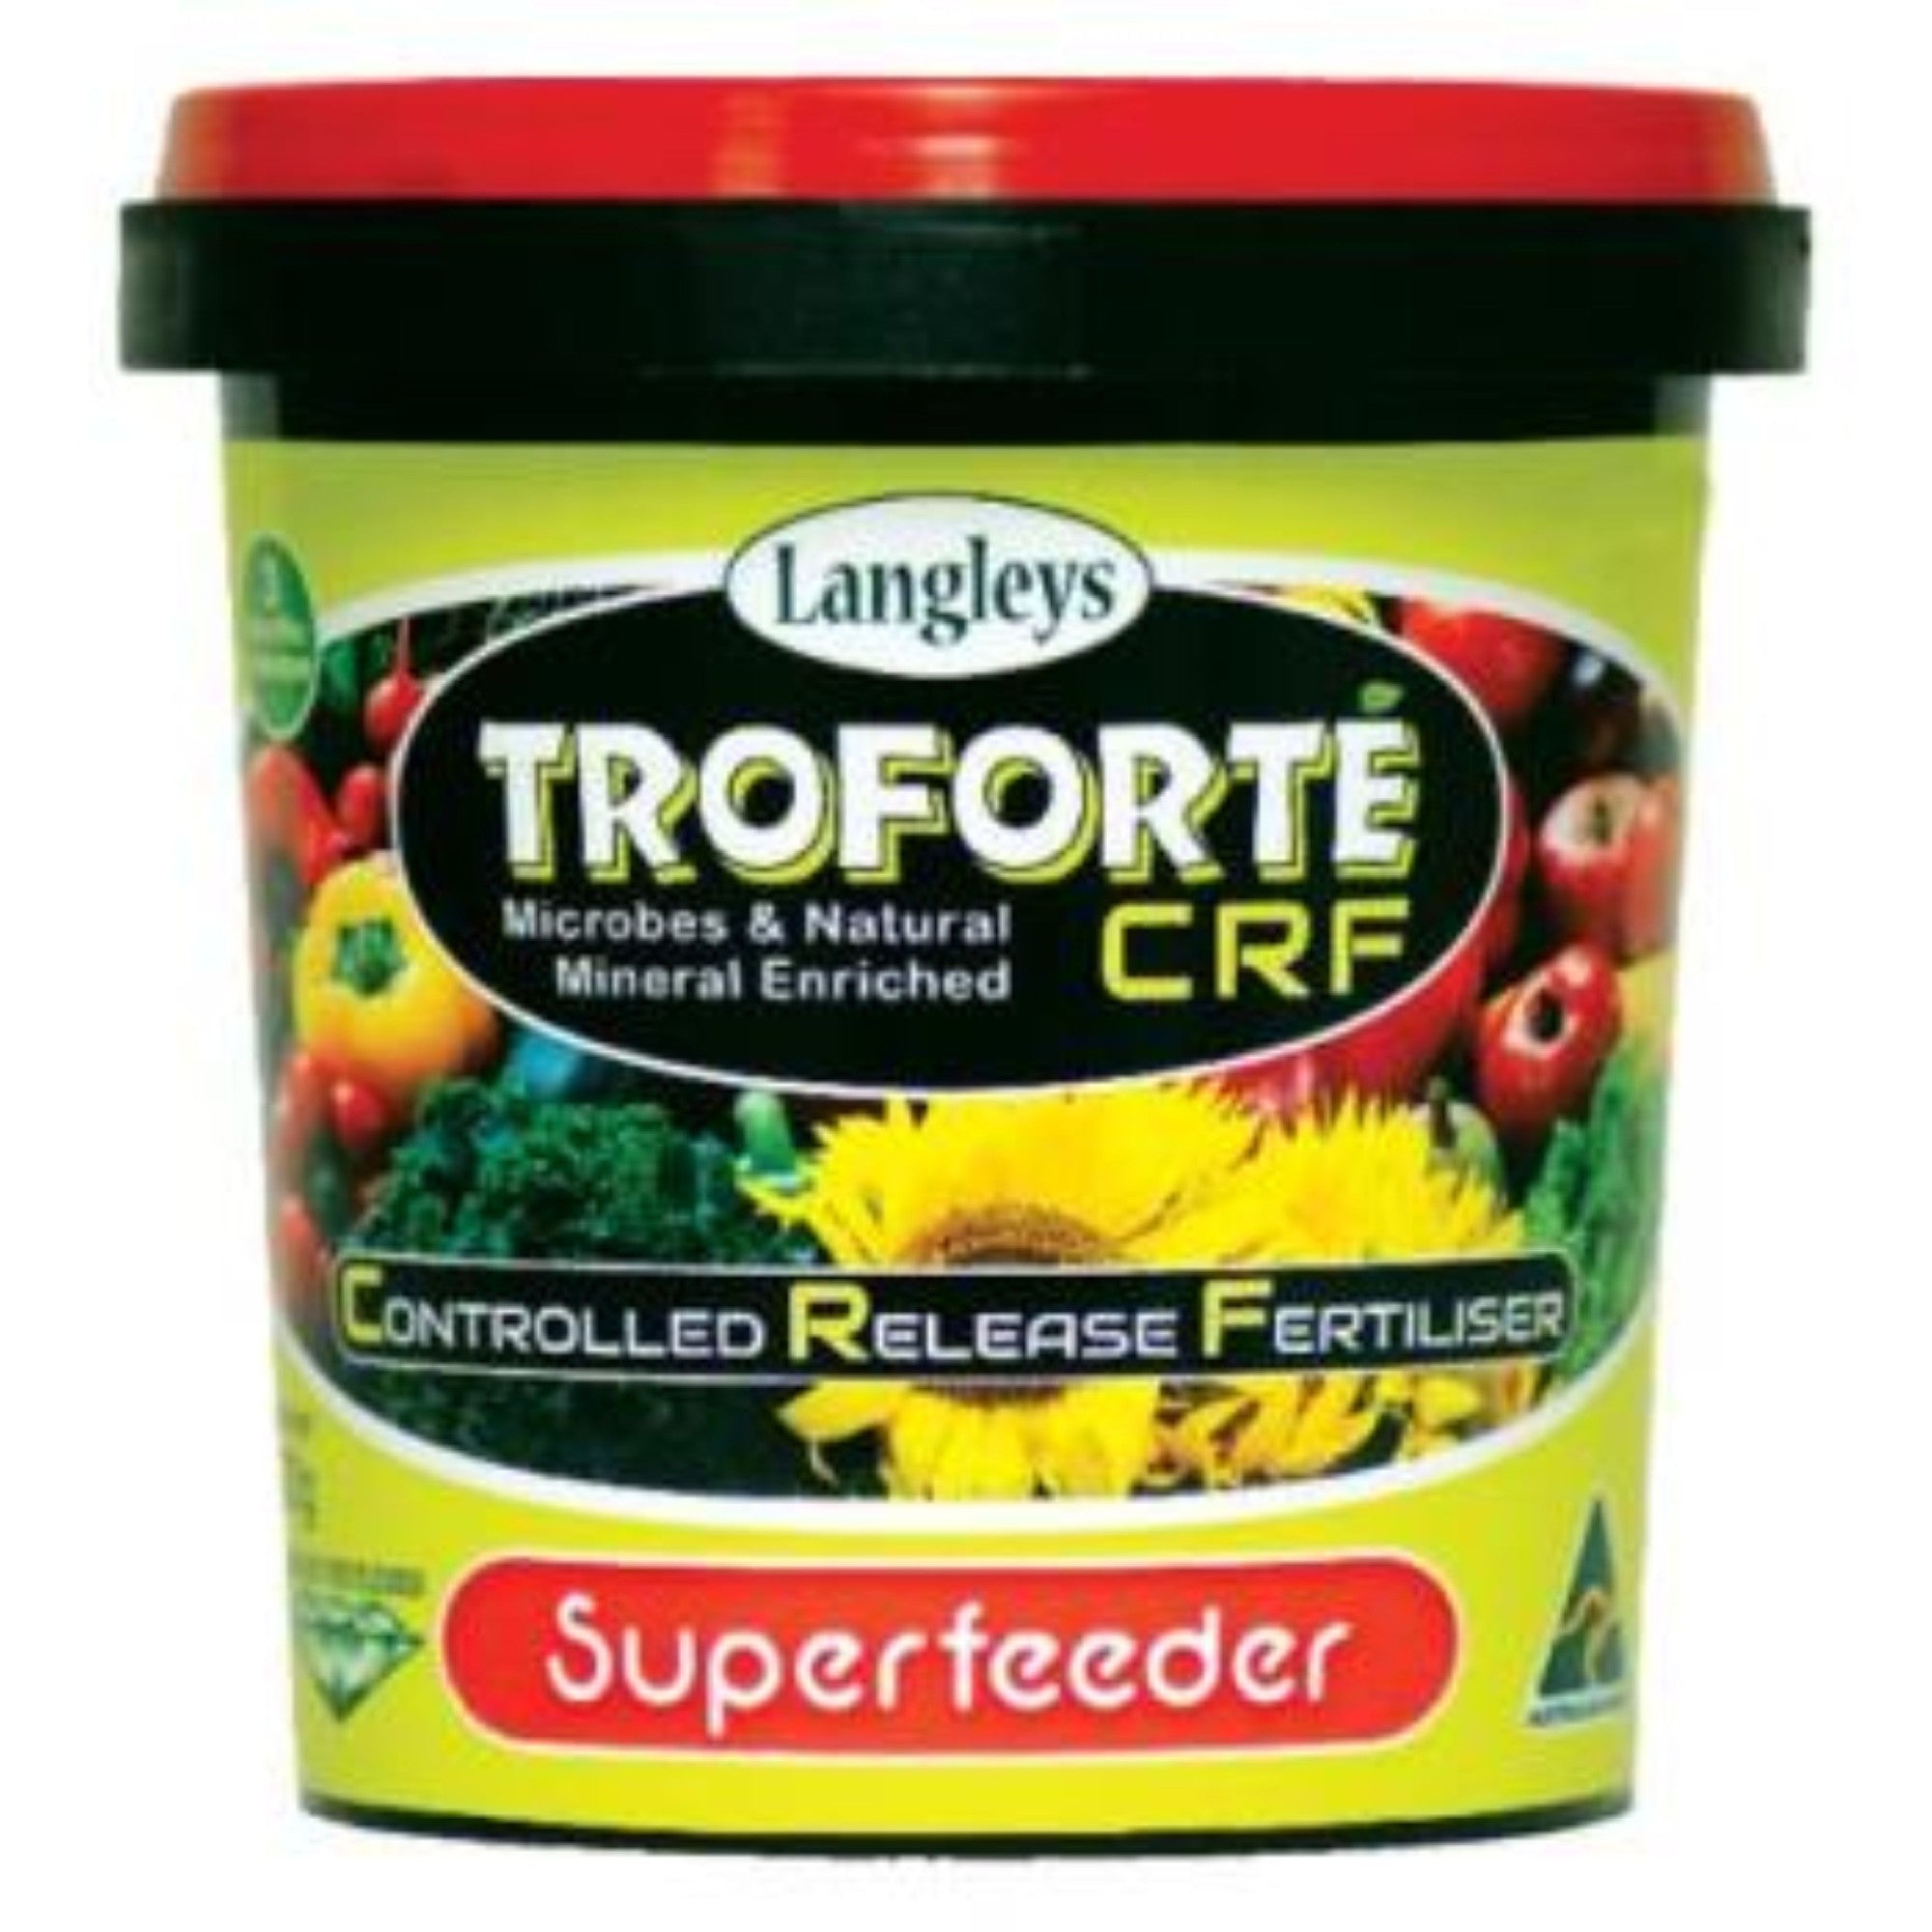 Troforte Crf Superfeeder 700g